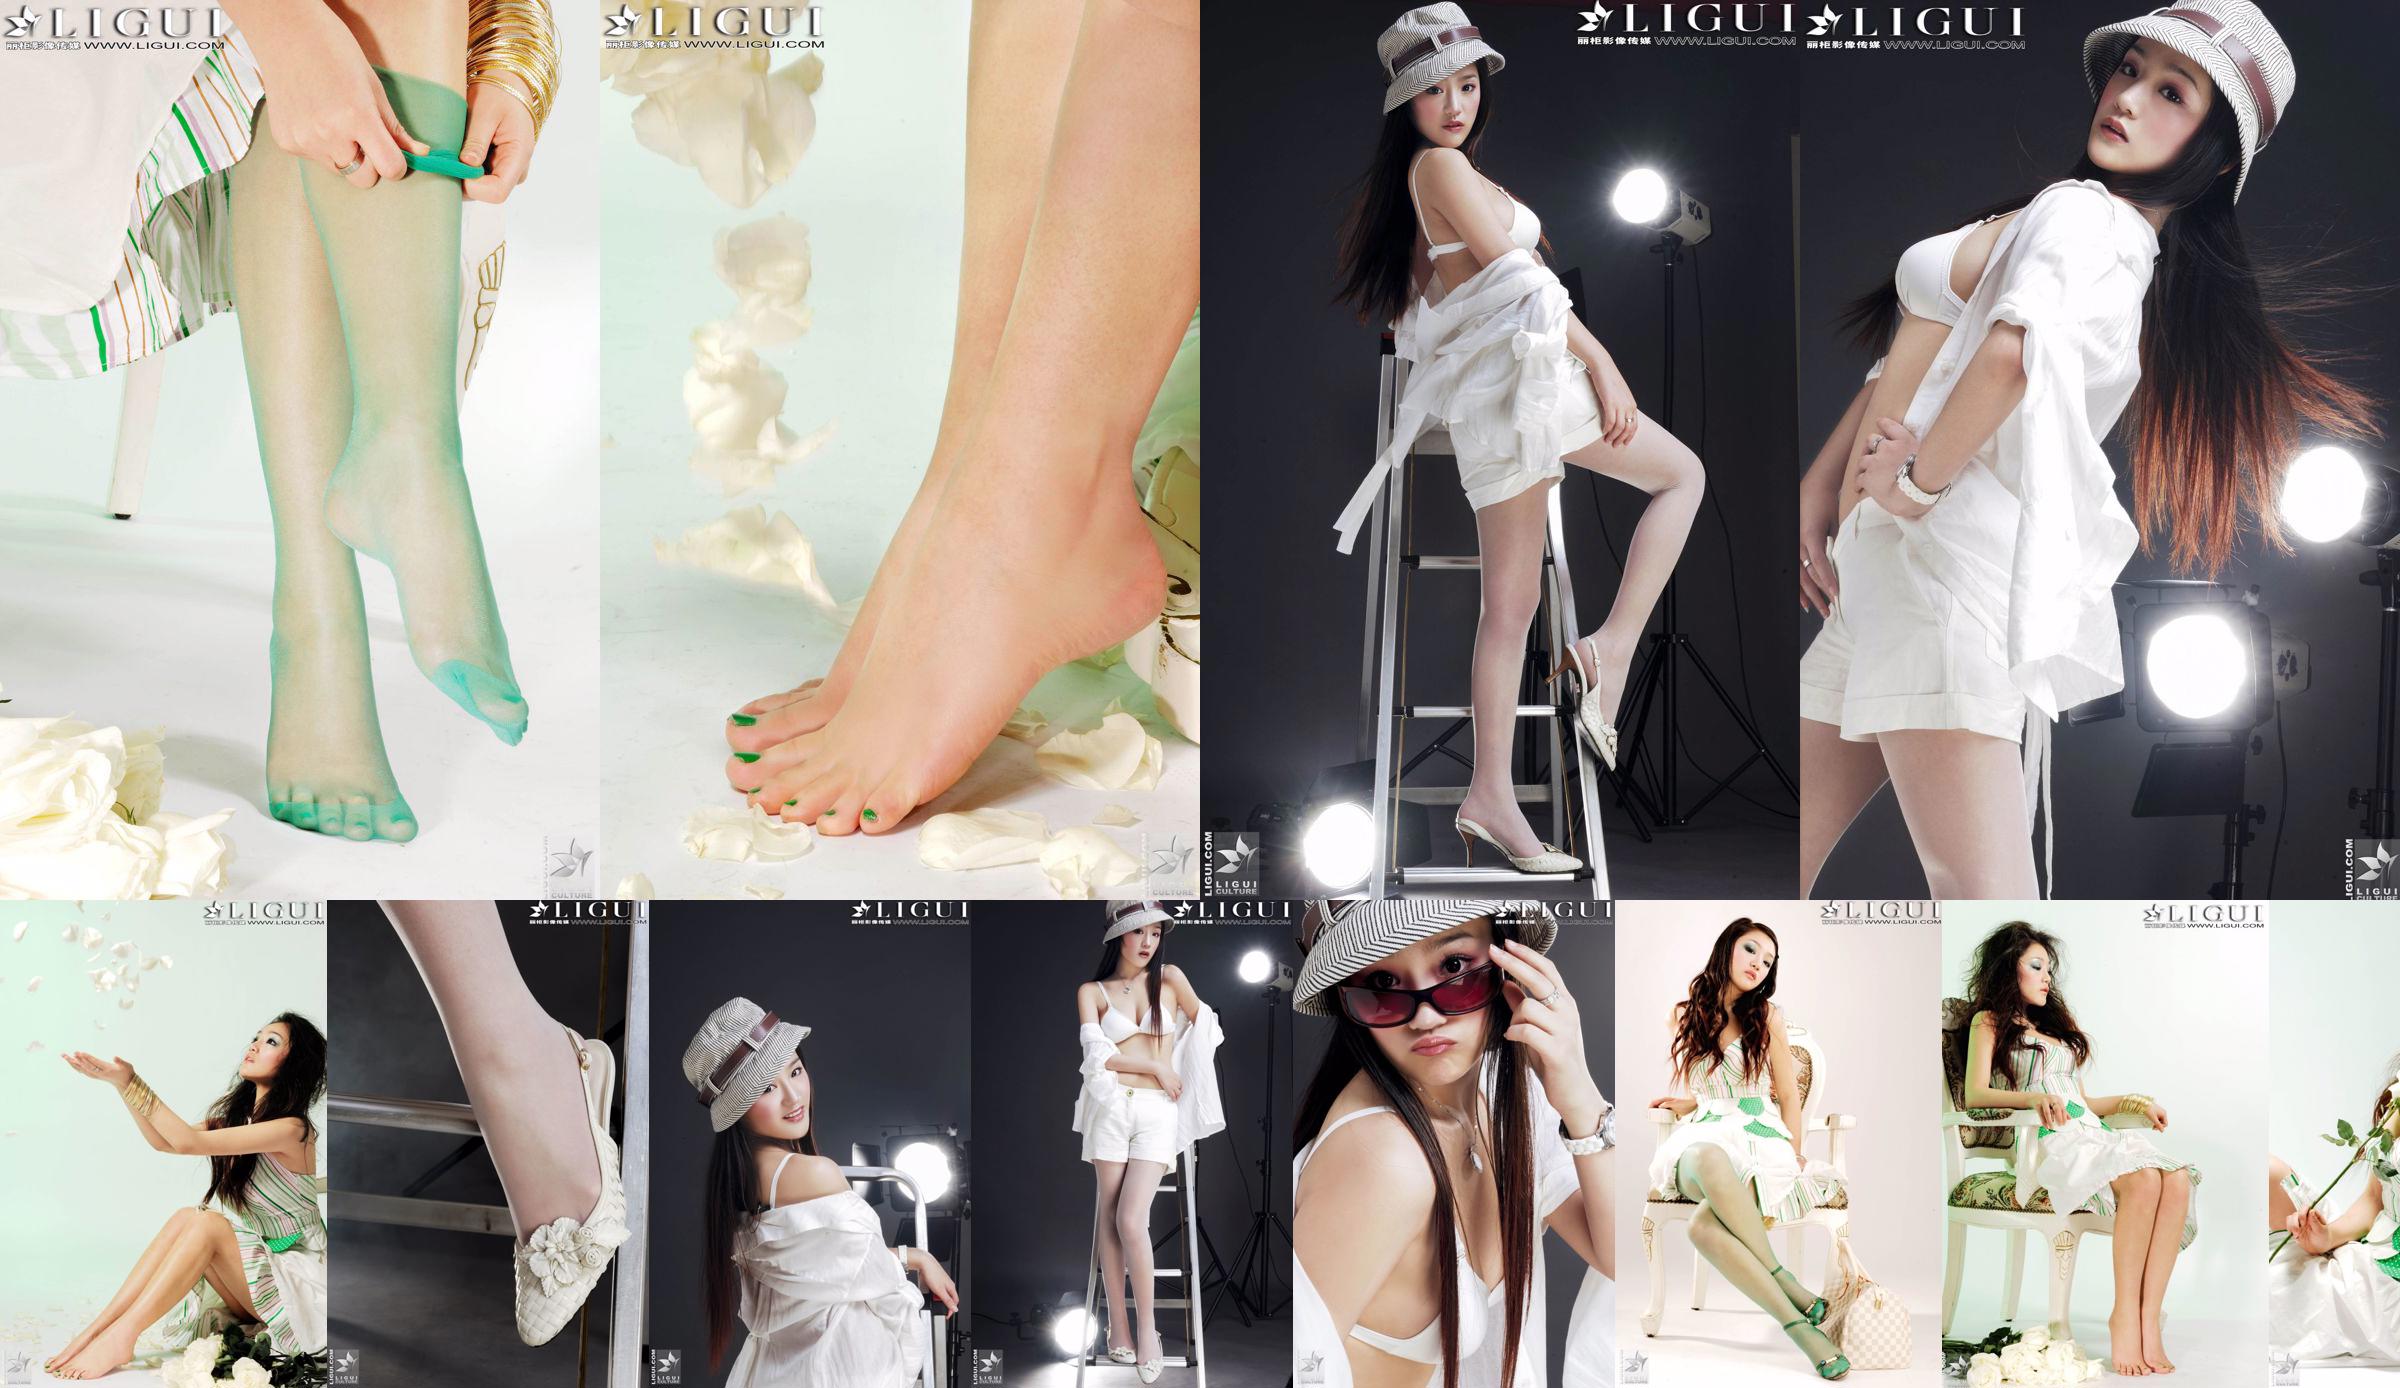 [丽 柜 贵 foot LiGui] Foto "Fashionable Foot" milik Model Zhang Jingyan tentang kaki dan kaki sutra yang indah No.66f9c4 Halaman 3